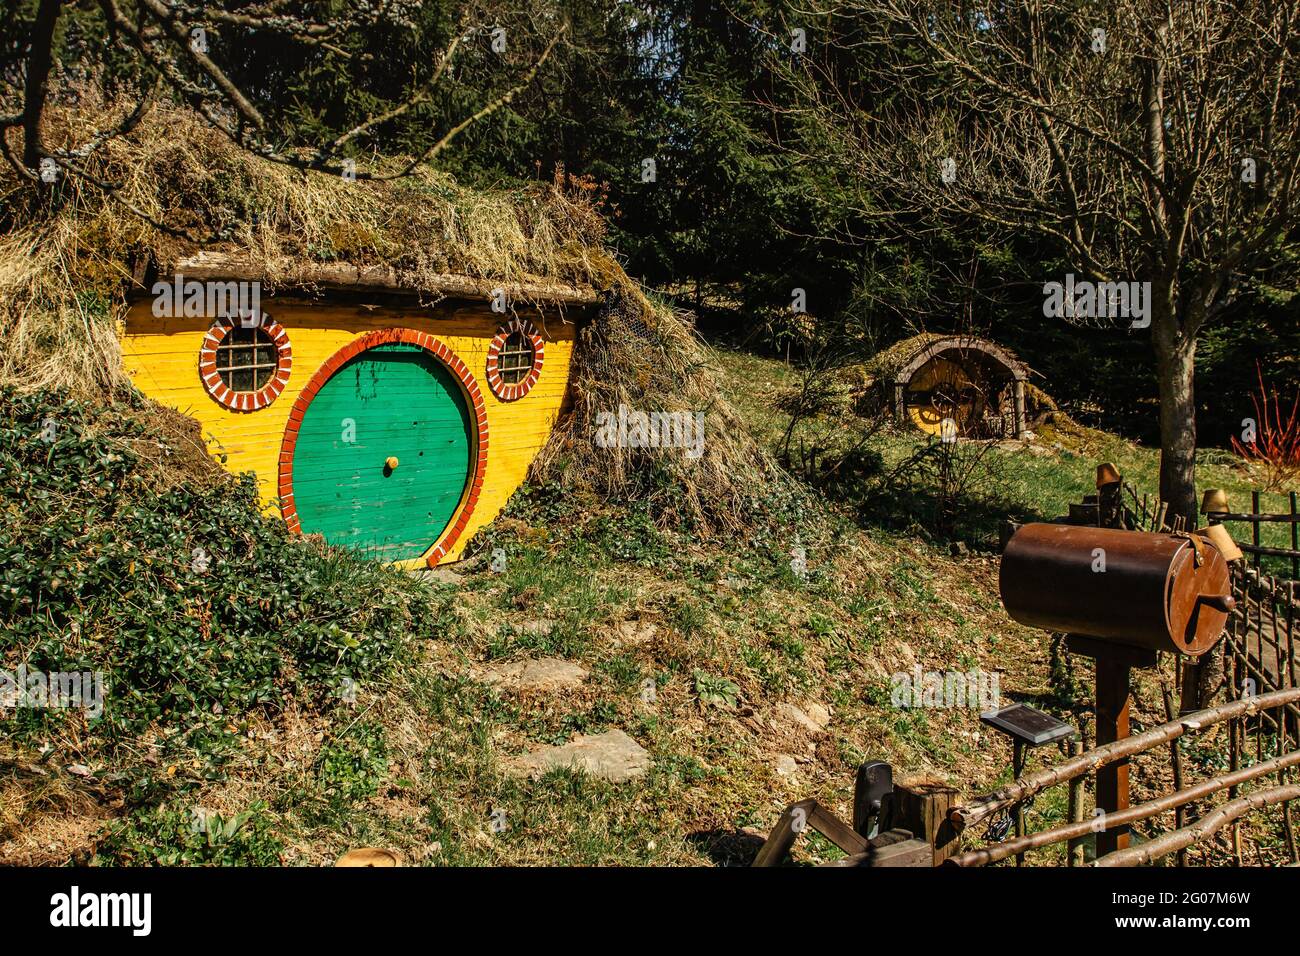 Hobbit casa en checo Hobbiton con tres agujeros Hobbit y lindos puertas verdes. Hogar de cuento de hadas en garden.Magic pequeño pueblo de fantasía película me localizó Foto de stock